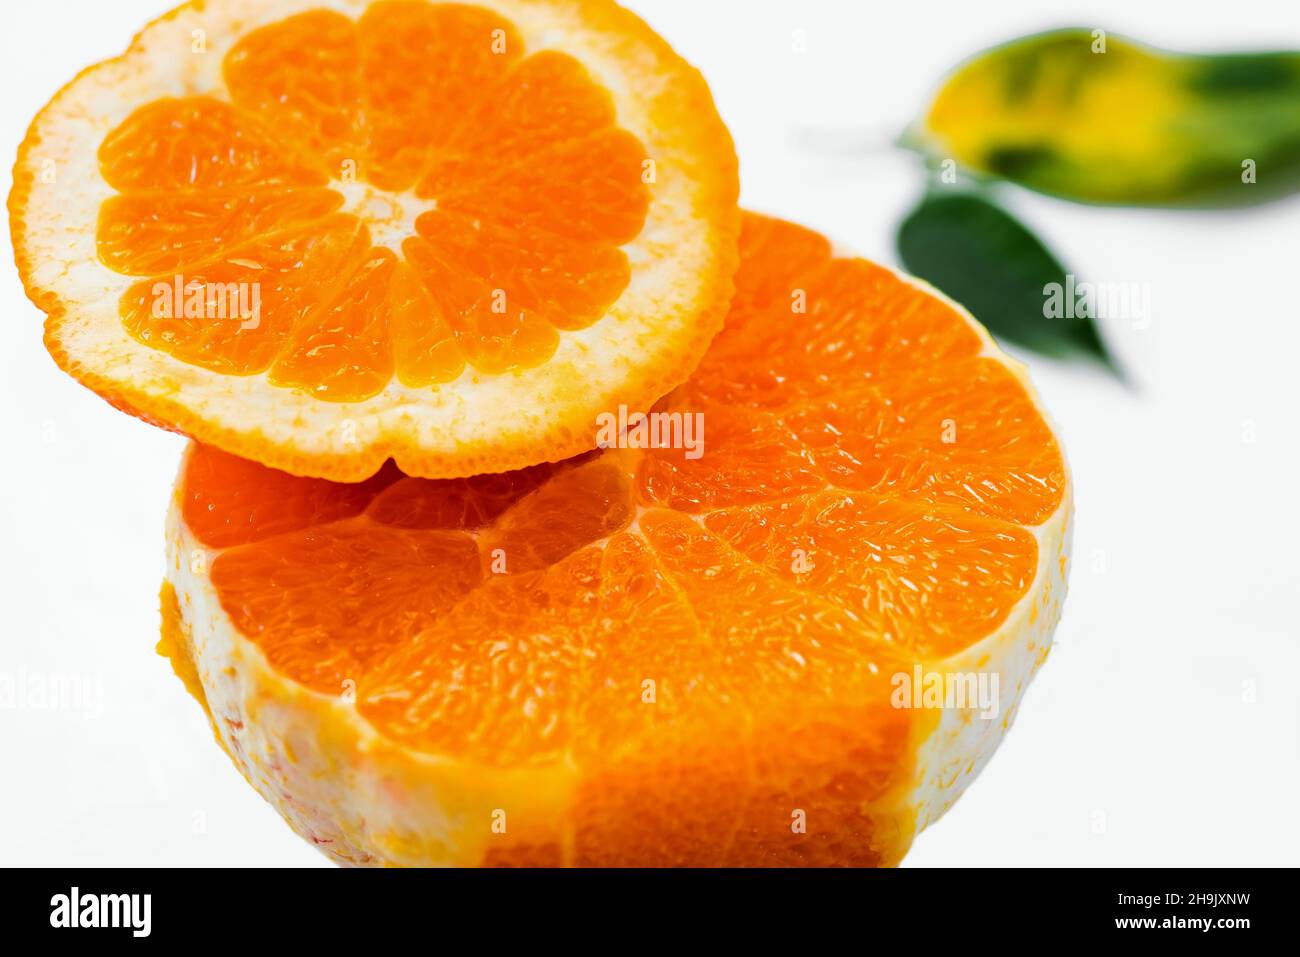 Halbiert geschälte frische Orange (schöne Struktur aus orangefarbenem Fleisch) mit verschwommenem Blatt auf weißem Hintergrund, Nahaufnahme. Stockfoto